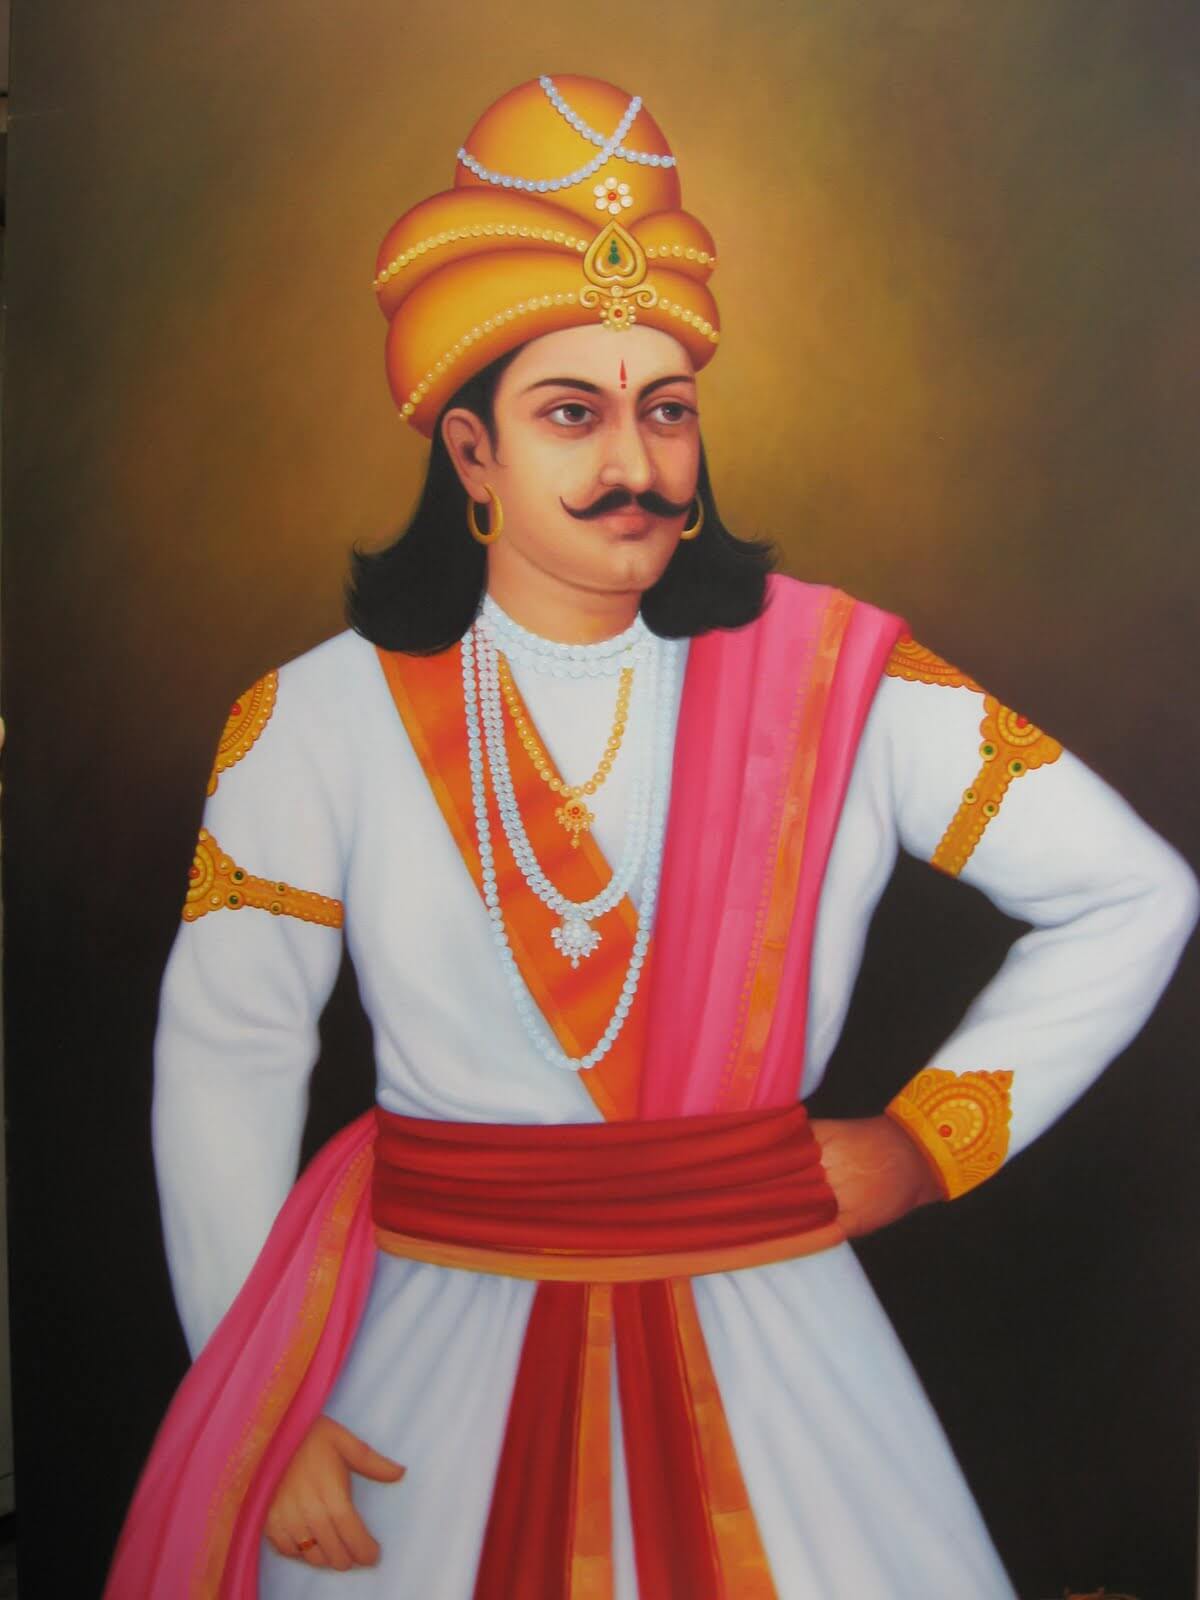 bindusar, father of ashoka